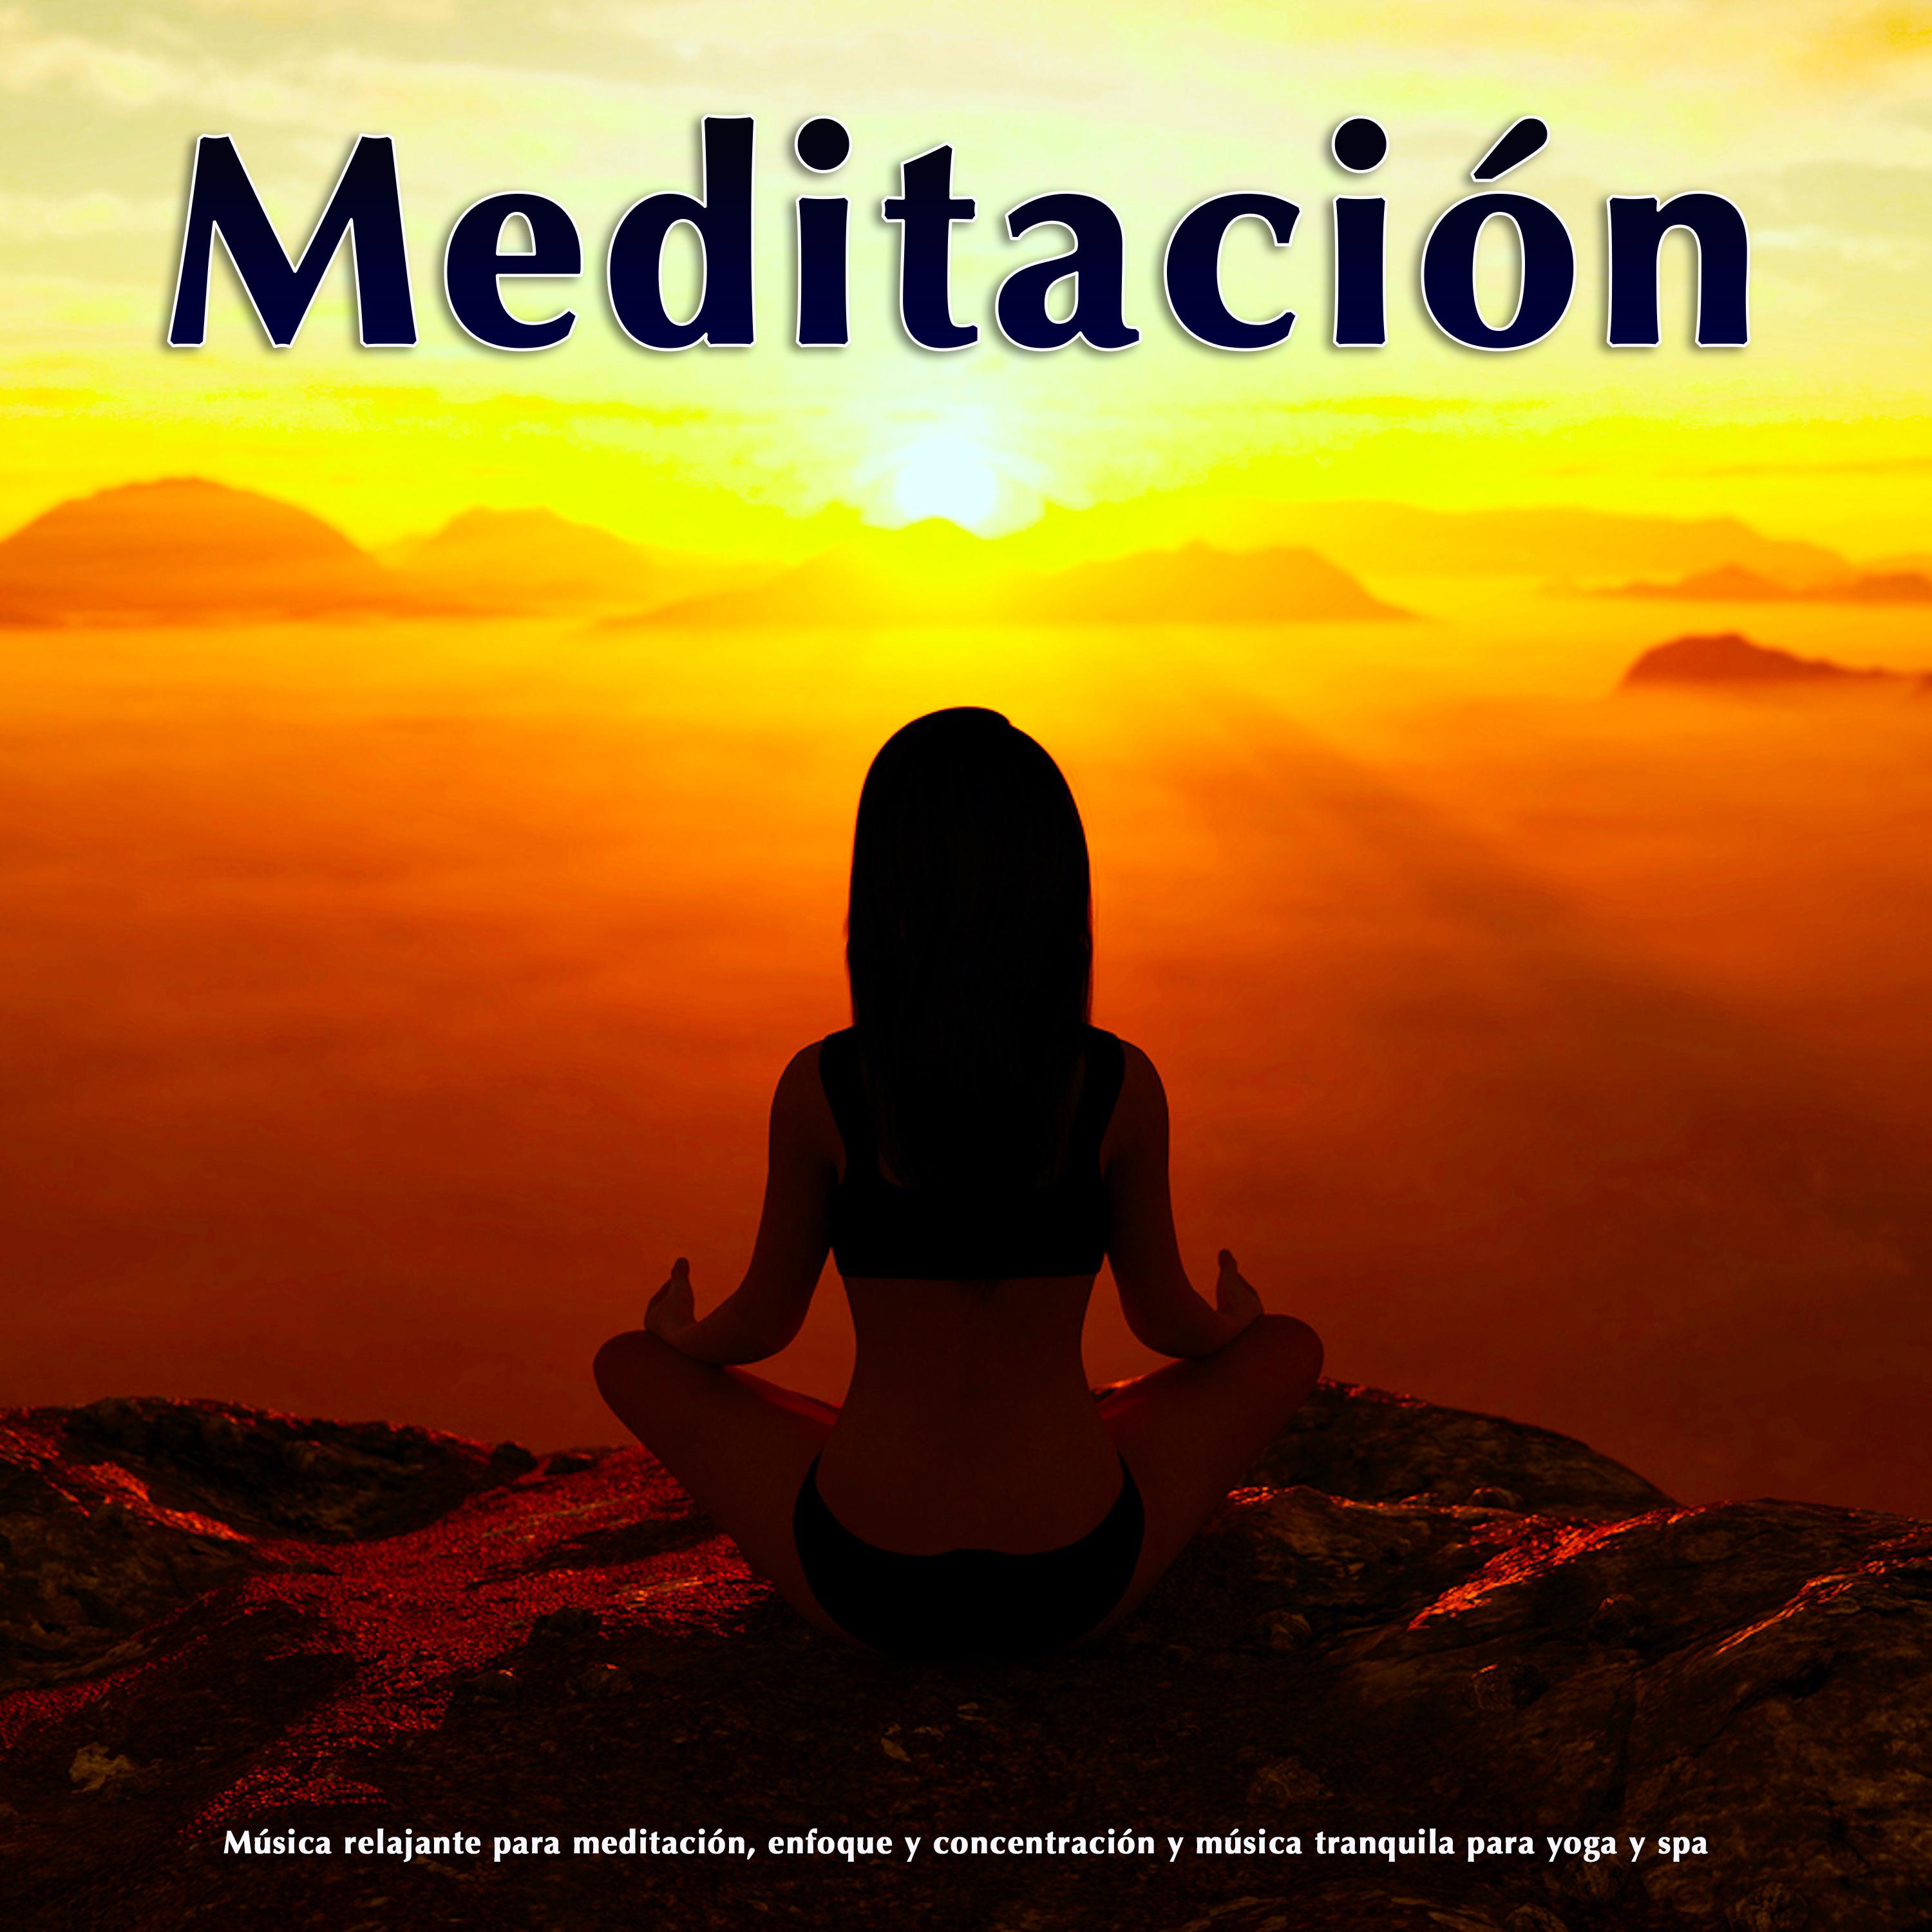 Meditación: Música relajante para meditación, enfoque y concentración y música tranquila para yoga y spa